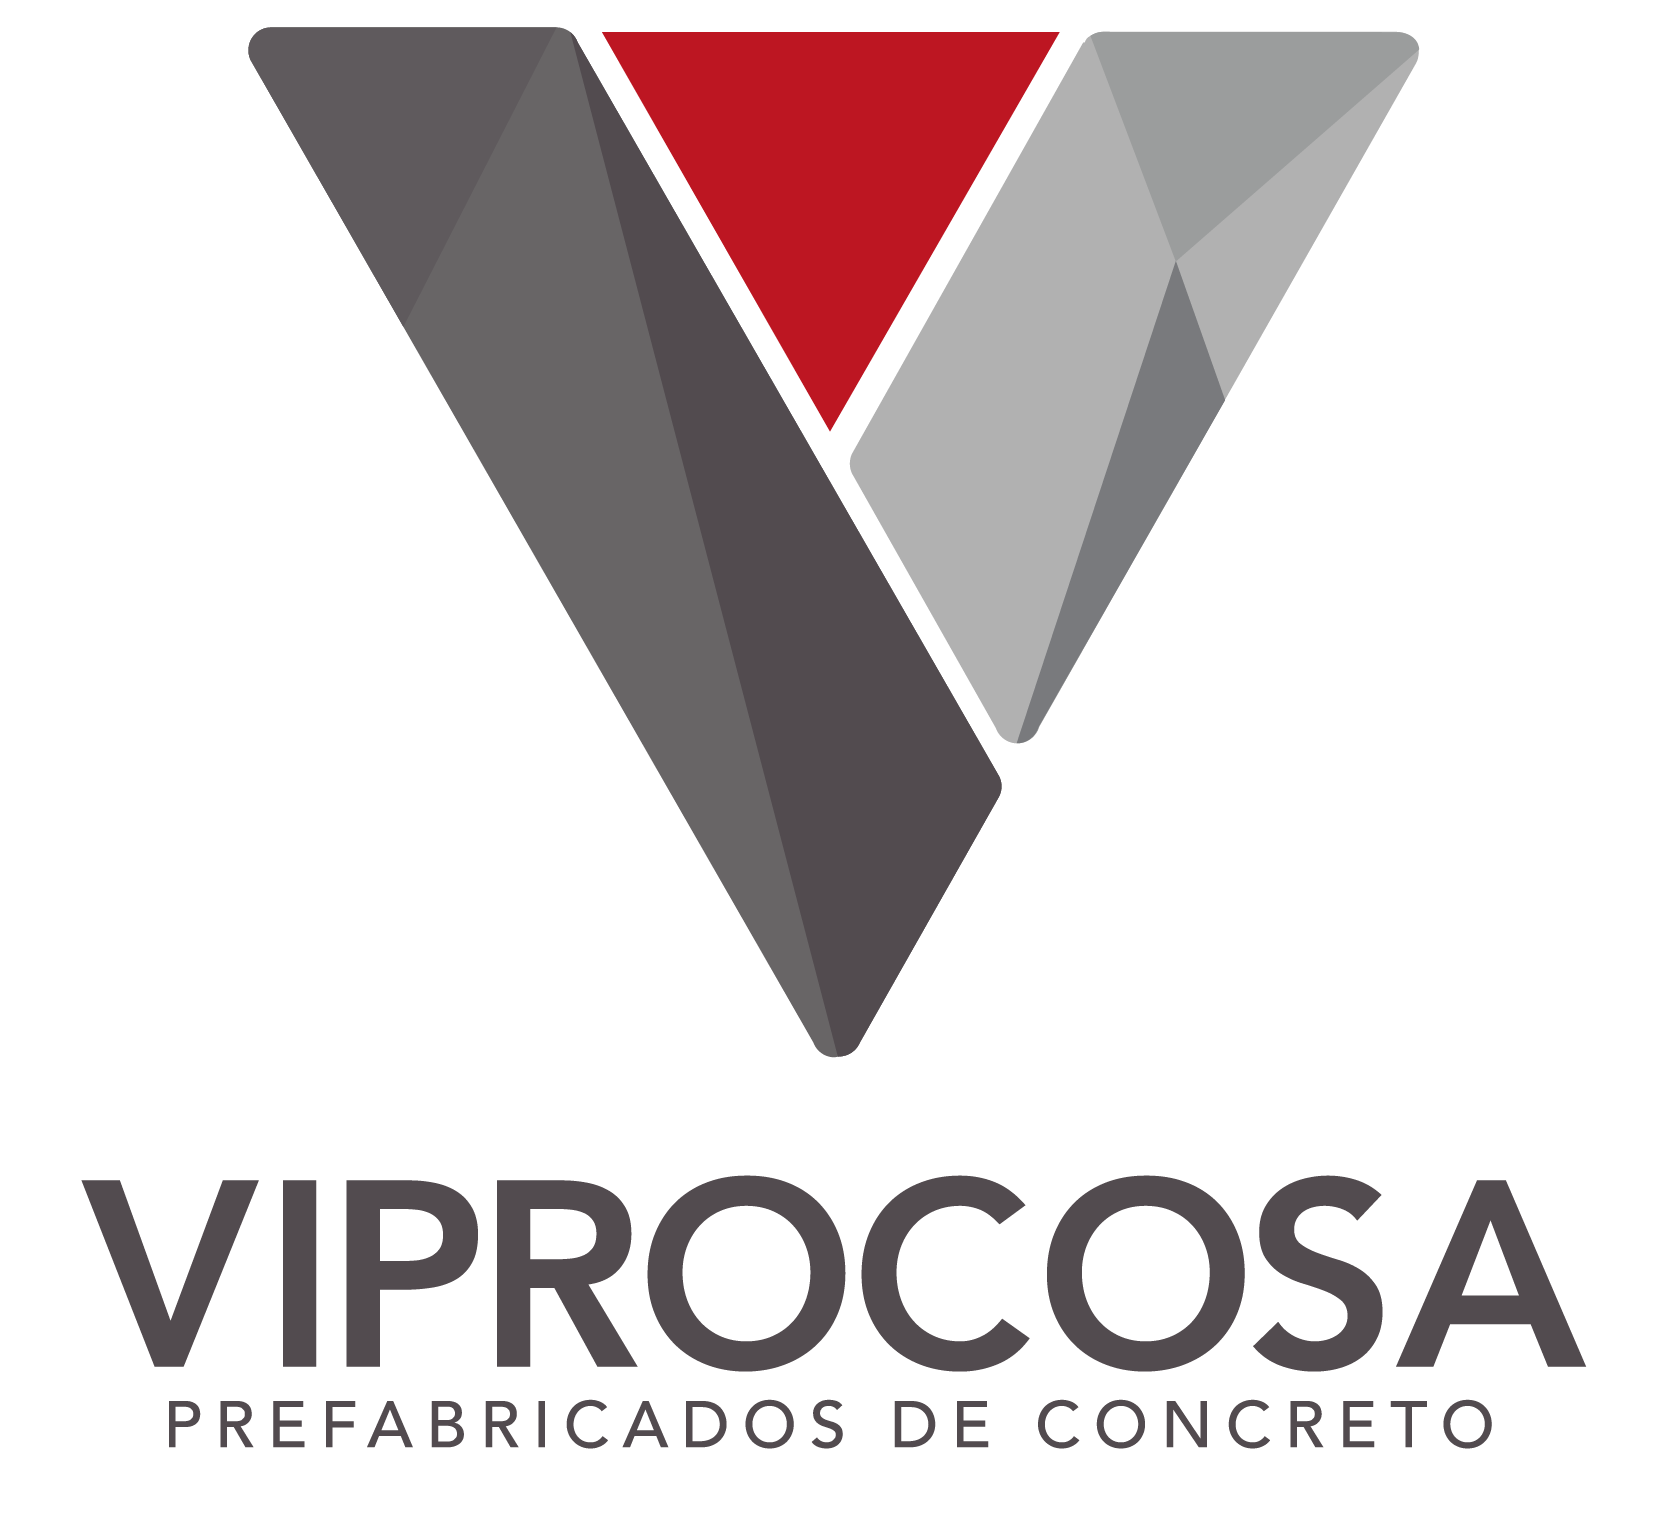 Viprocosa